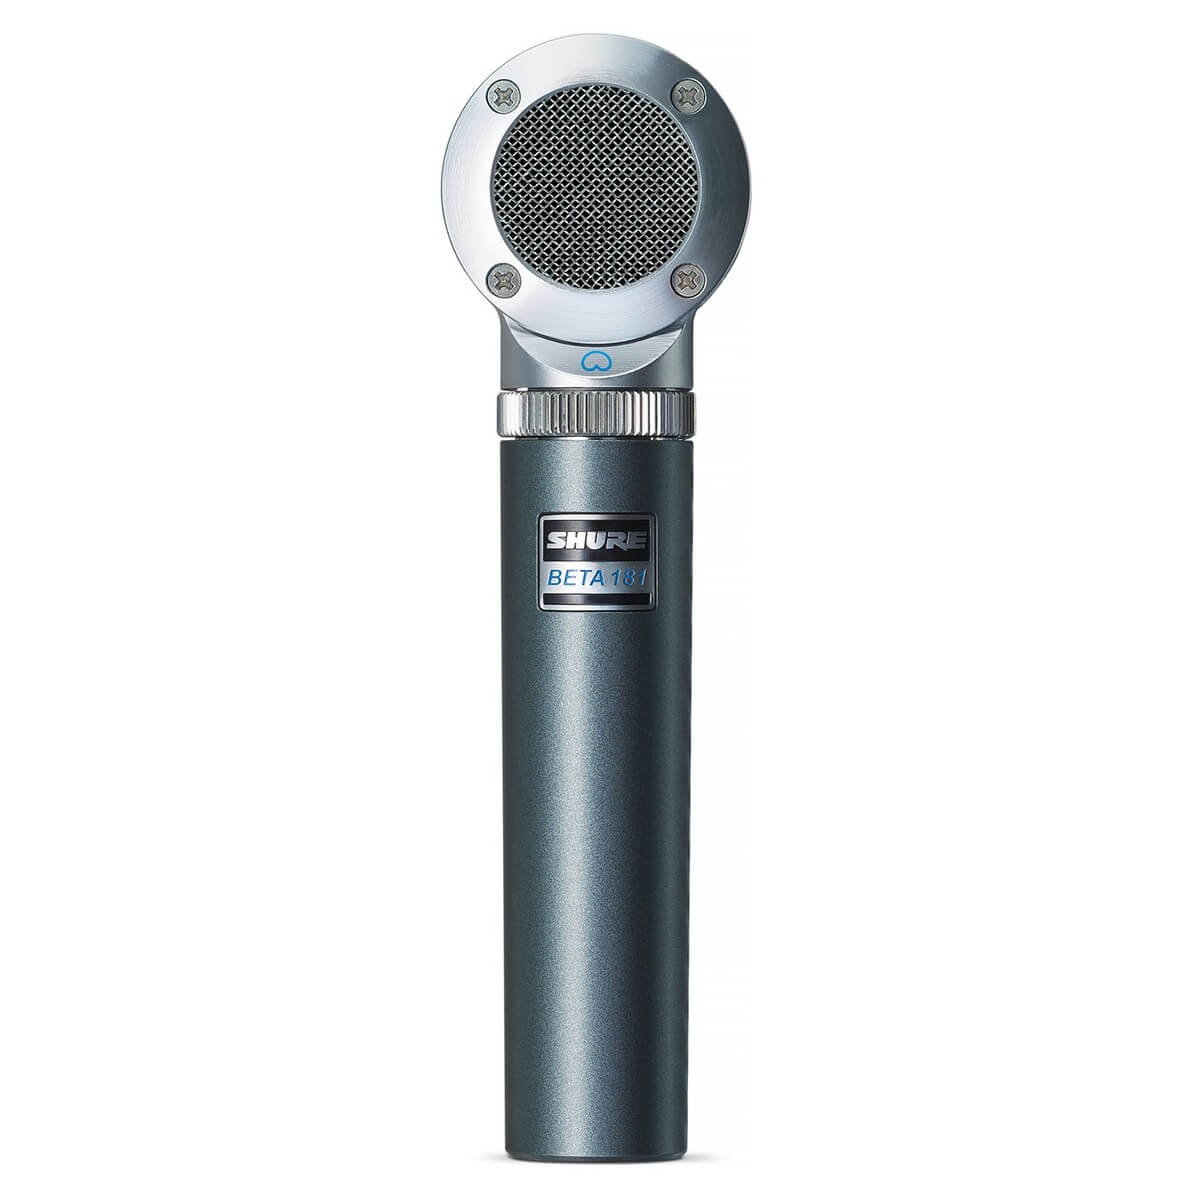 Shure general Shure beta181/bi micrófono ultracompacto de captación lateral